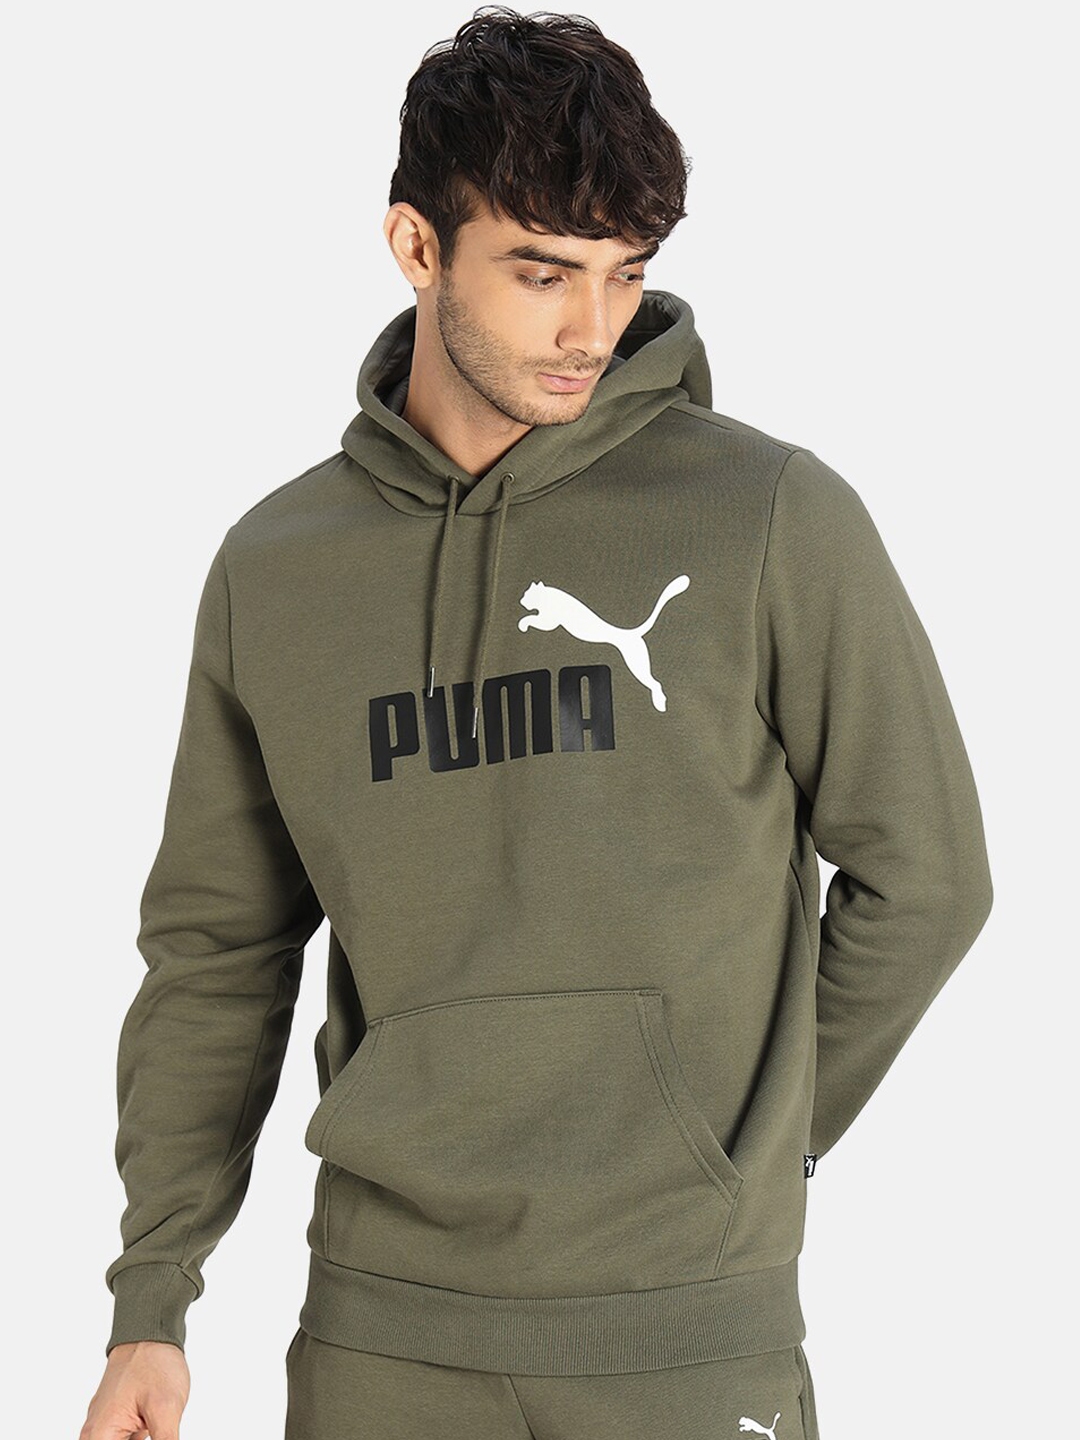 Buy Puma Men Olive Green Printed Essential+ Hooded Sweatshirt ...